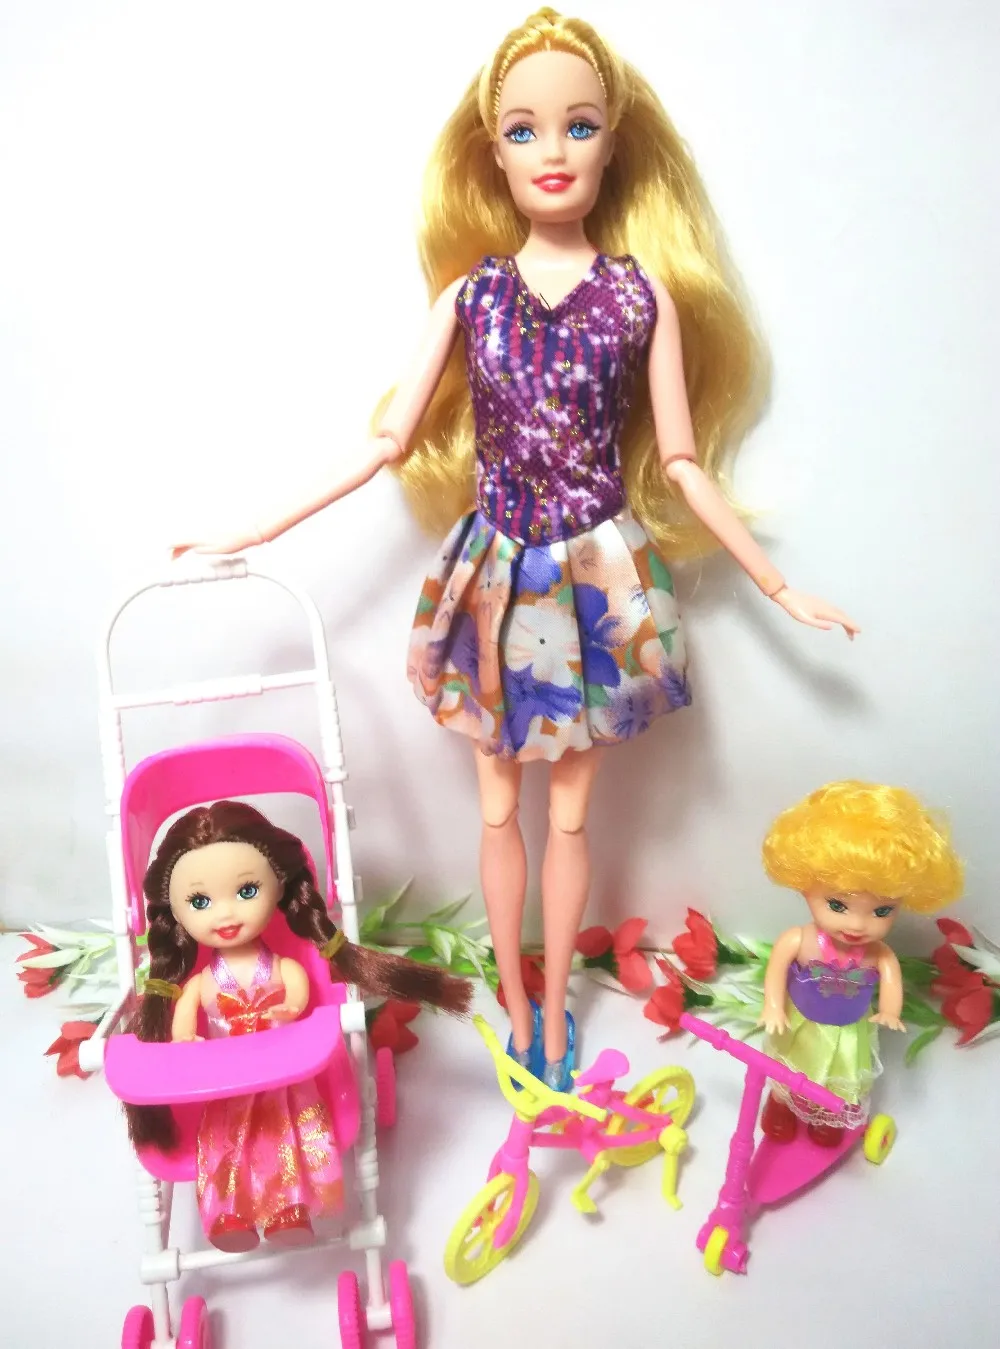 Девушка играть дома игрушки Семья 4 Люди Куклы костюмы 1Mom/1Dad/2 маленьких Келли девушка/велосипеда игрушки /скутер/1 Детские коляски для Барби, JY